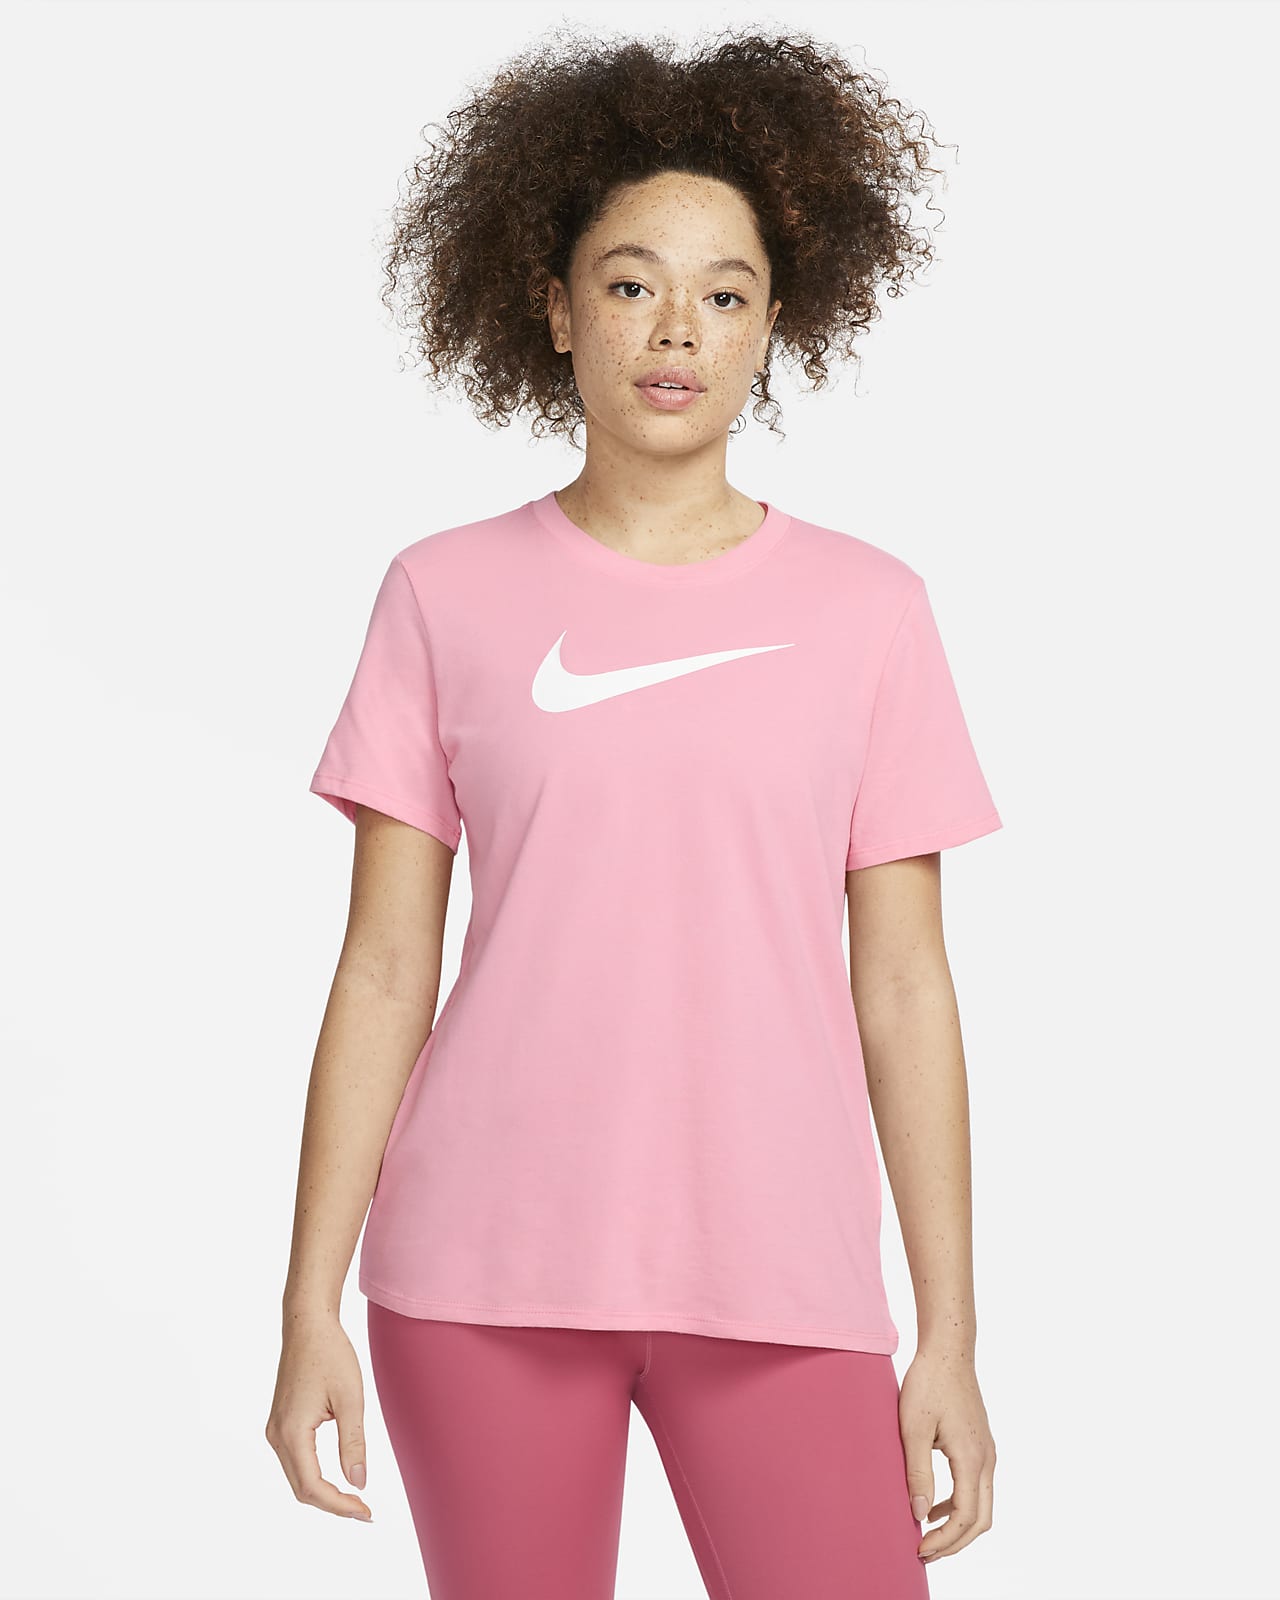 Swoosh Women's T-Shirt. Nike.com